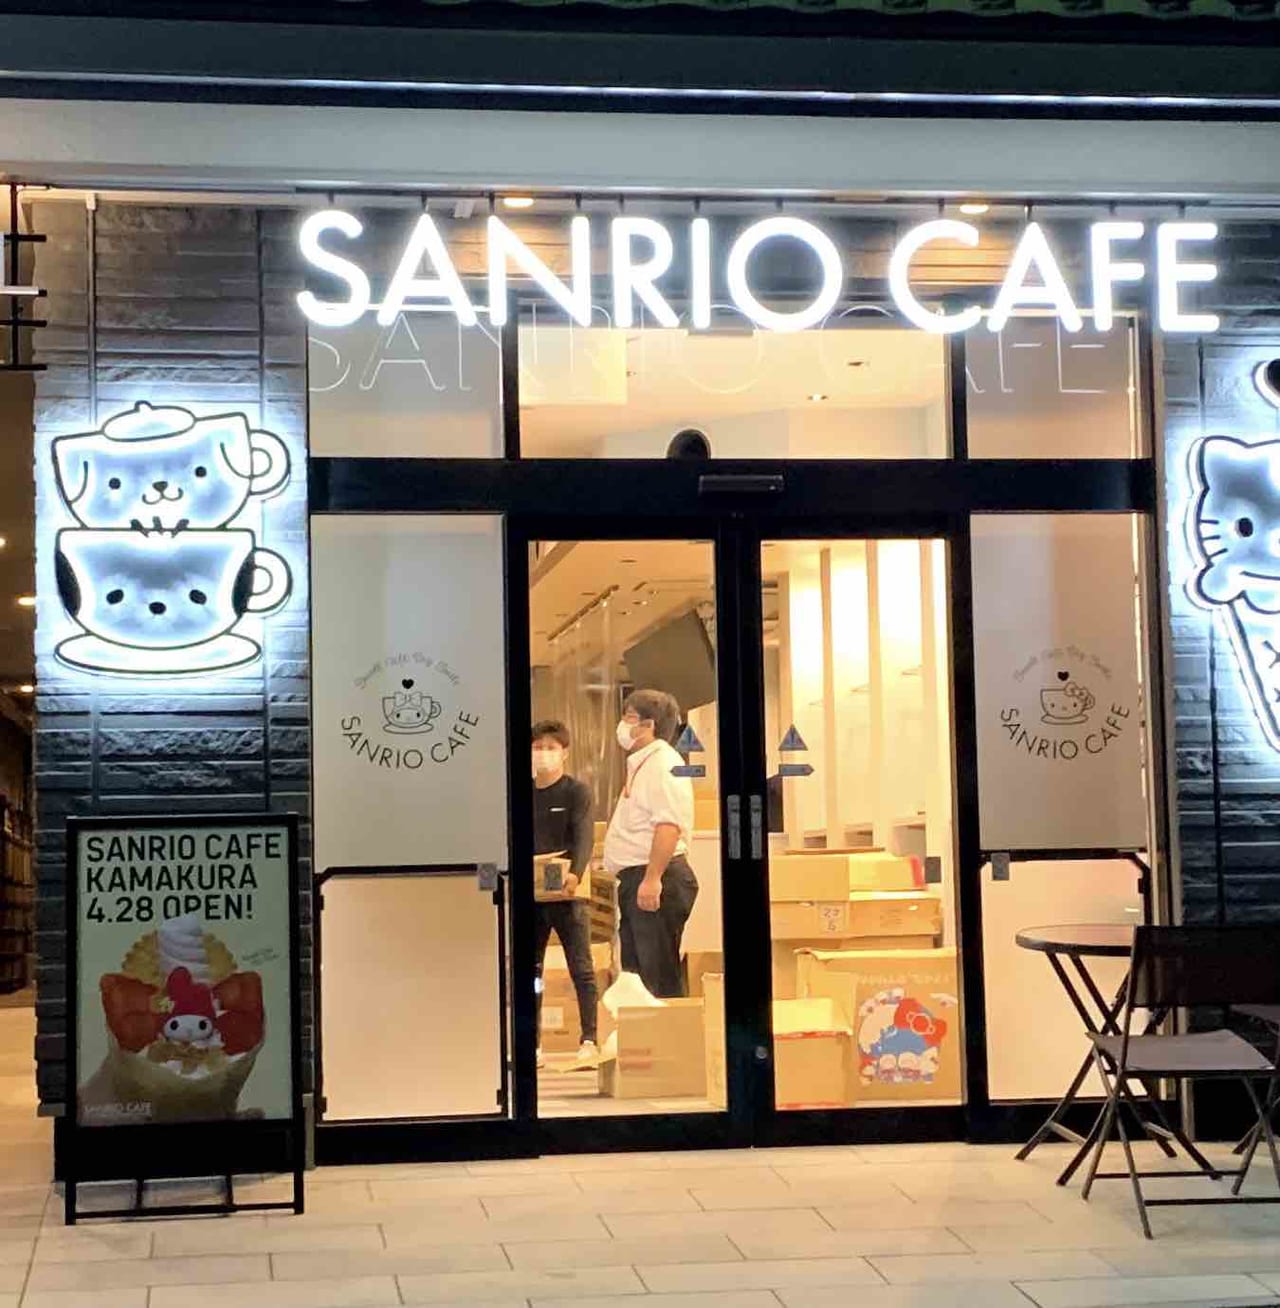 鎌倉市 八幡宮至近のあのコーヒーショップあった場所は Sanrio Cafe 鎌倉店 になりました 4 28オープン 号外net 鎌倉市 逗子市 葉山町